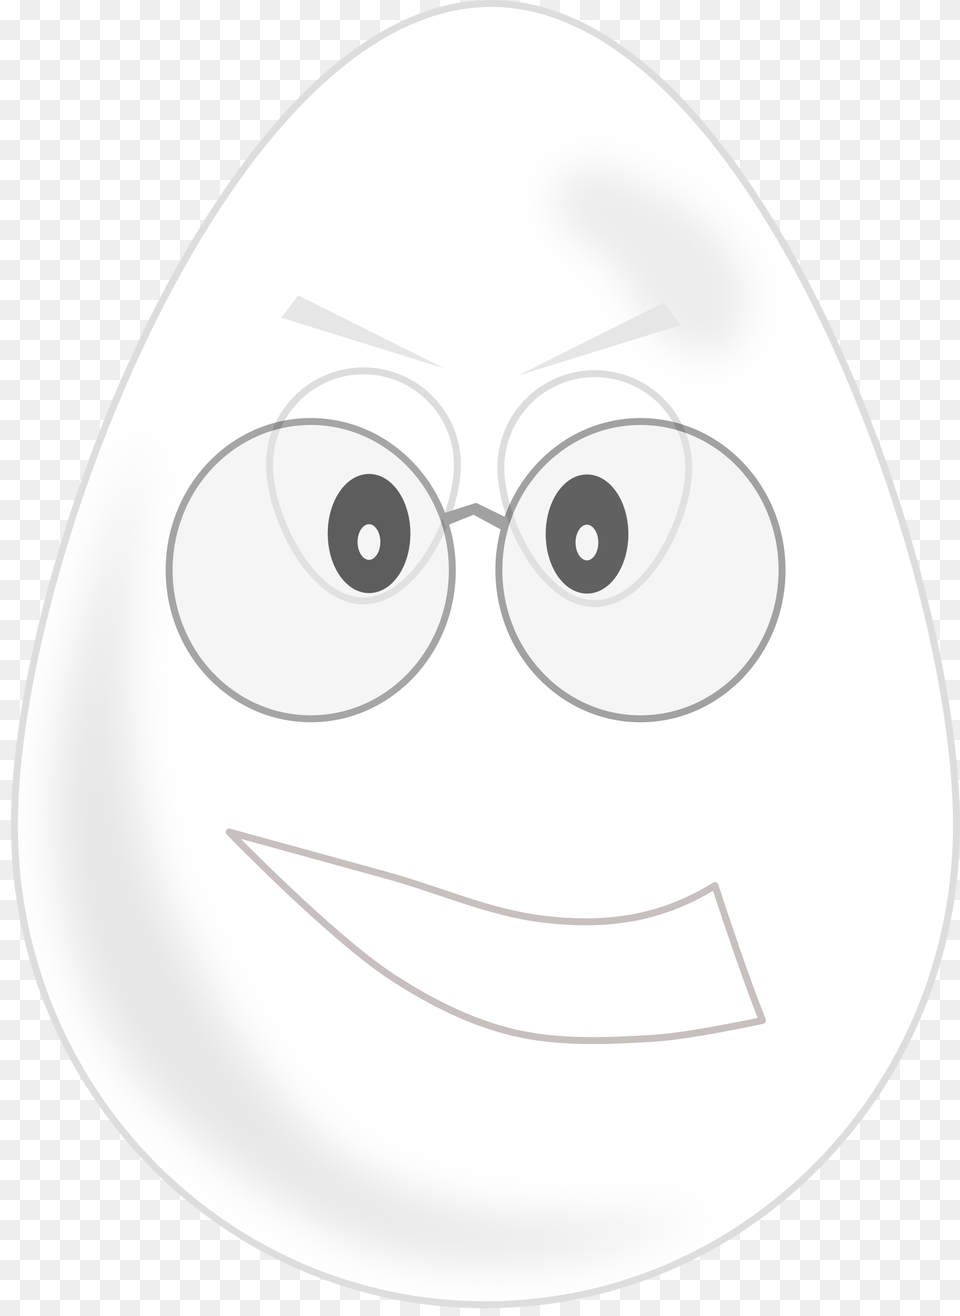 Orange Easter Egg Clip Art Egg Wearing Glasses, Food, Disk Png Image